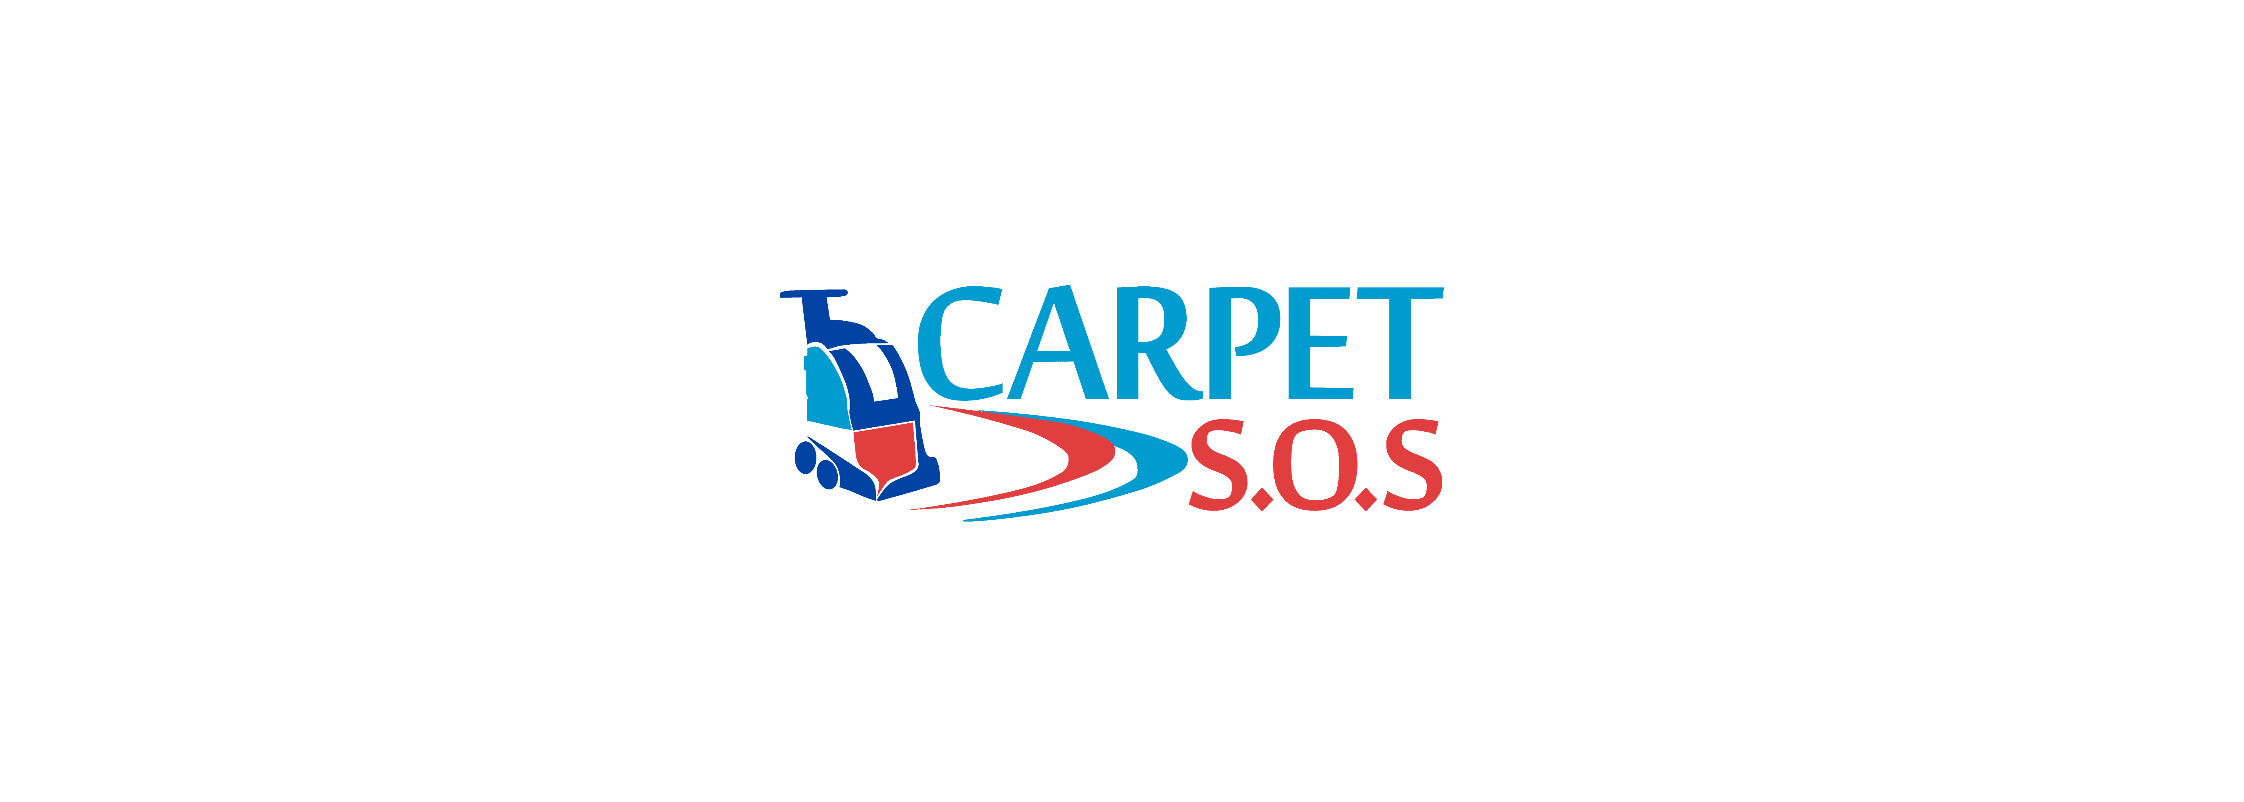 Carpet S.O.S